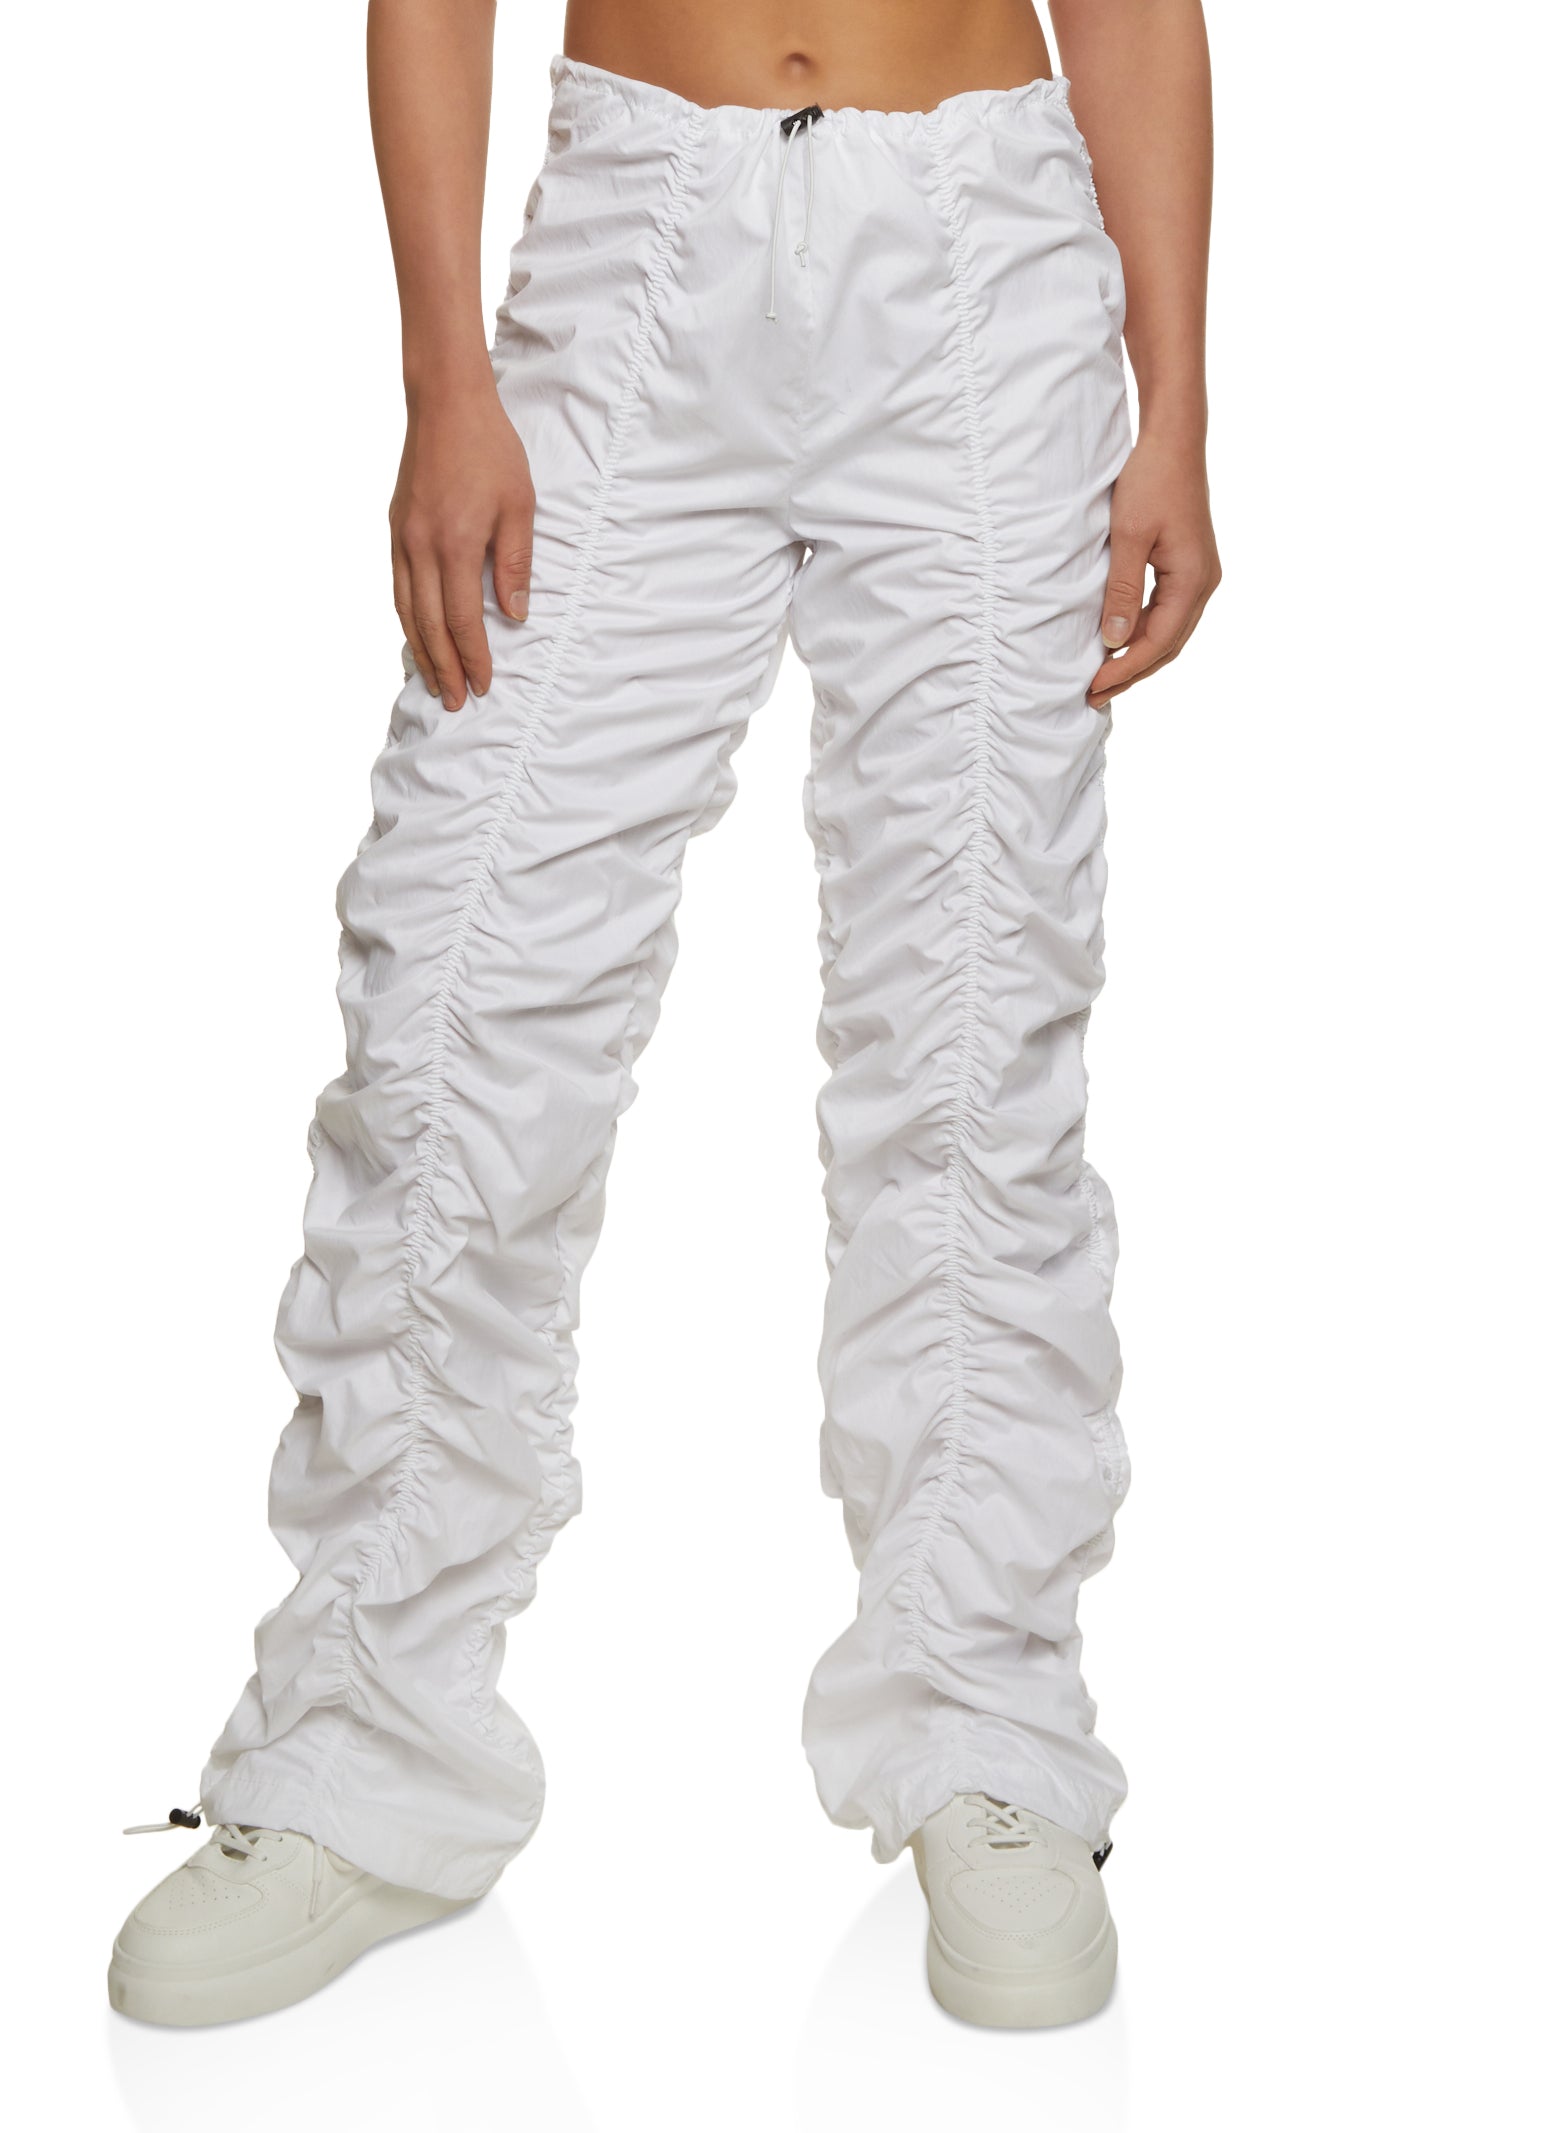 Nylon Parachute Pants - White - Ladies